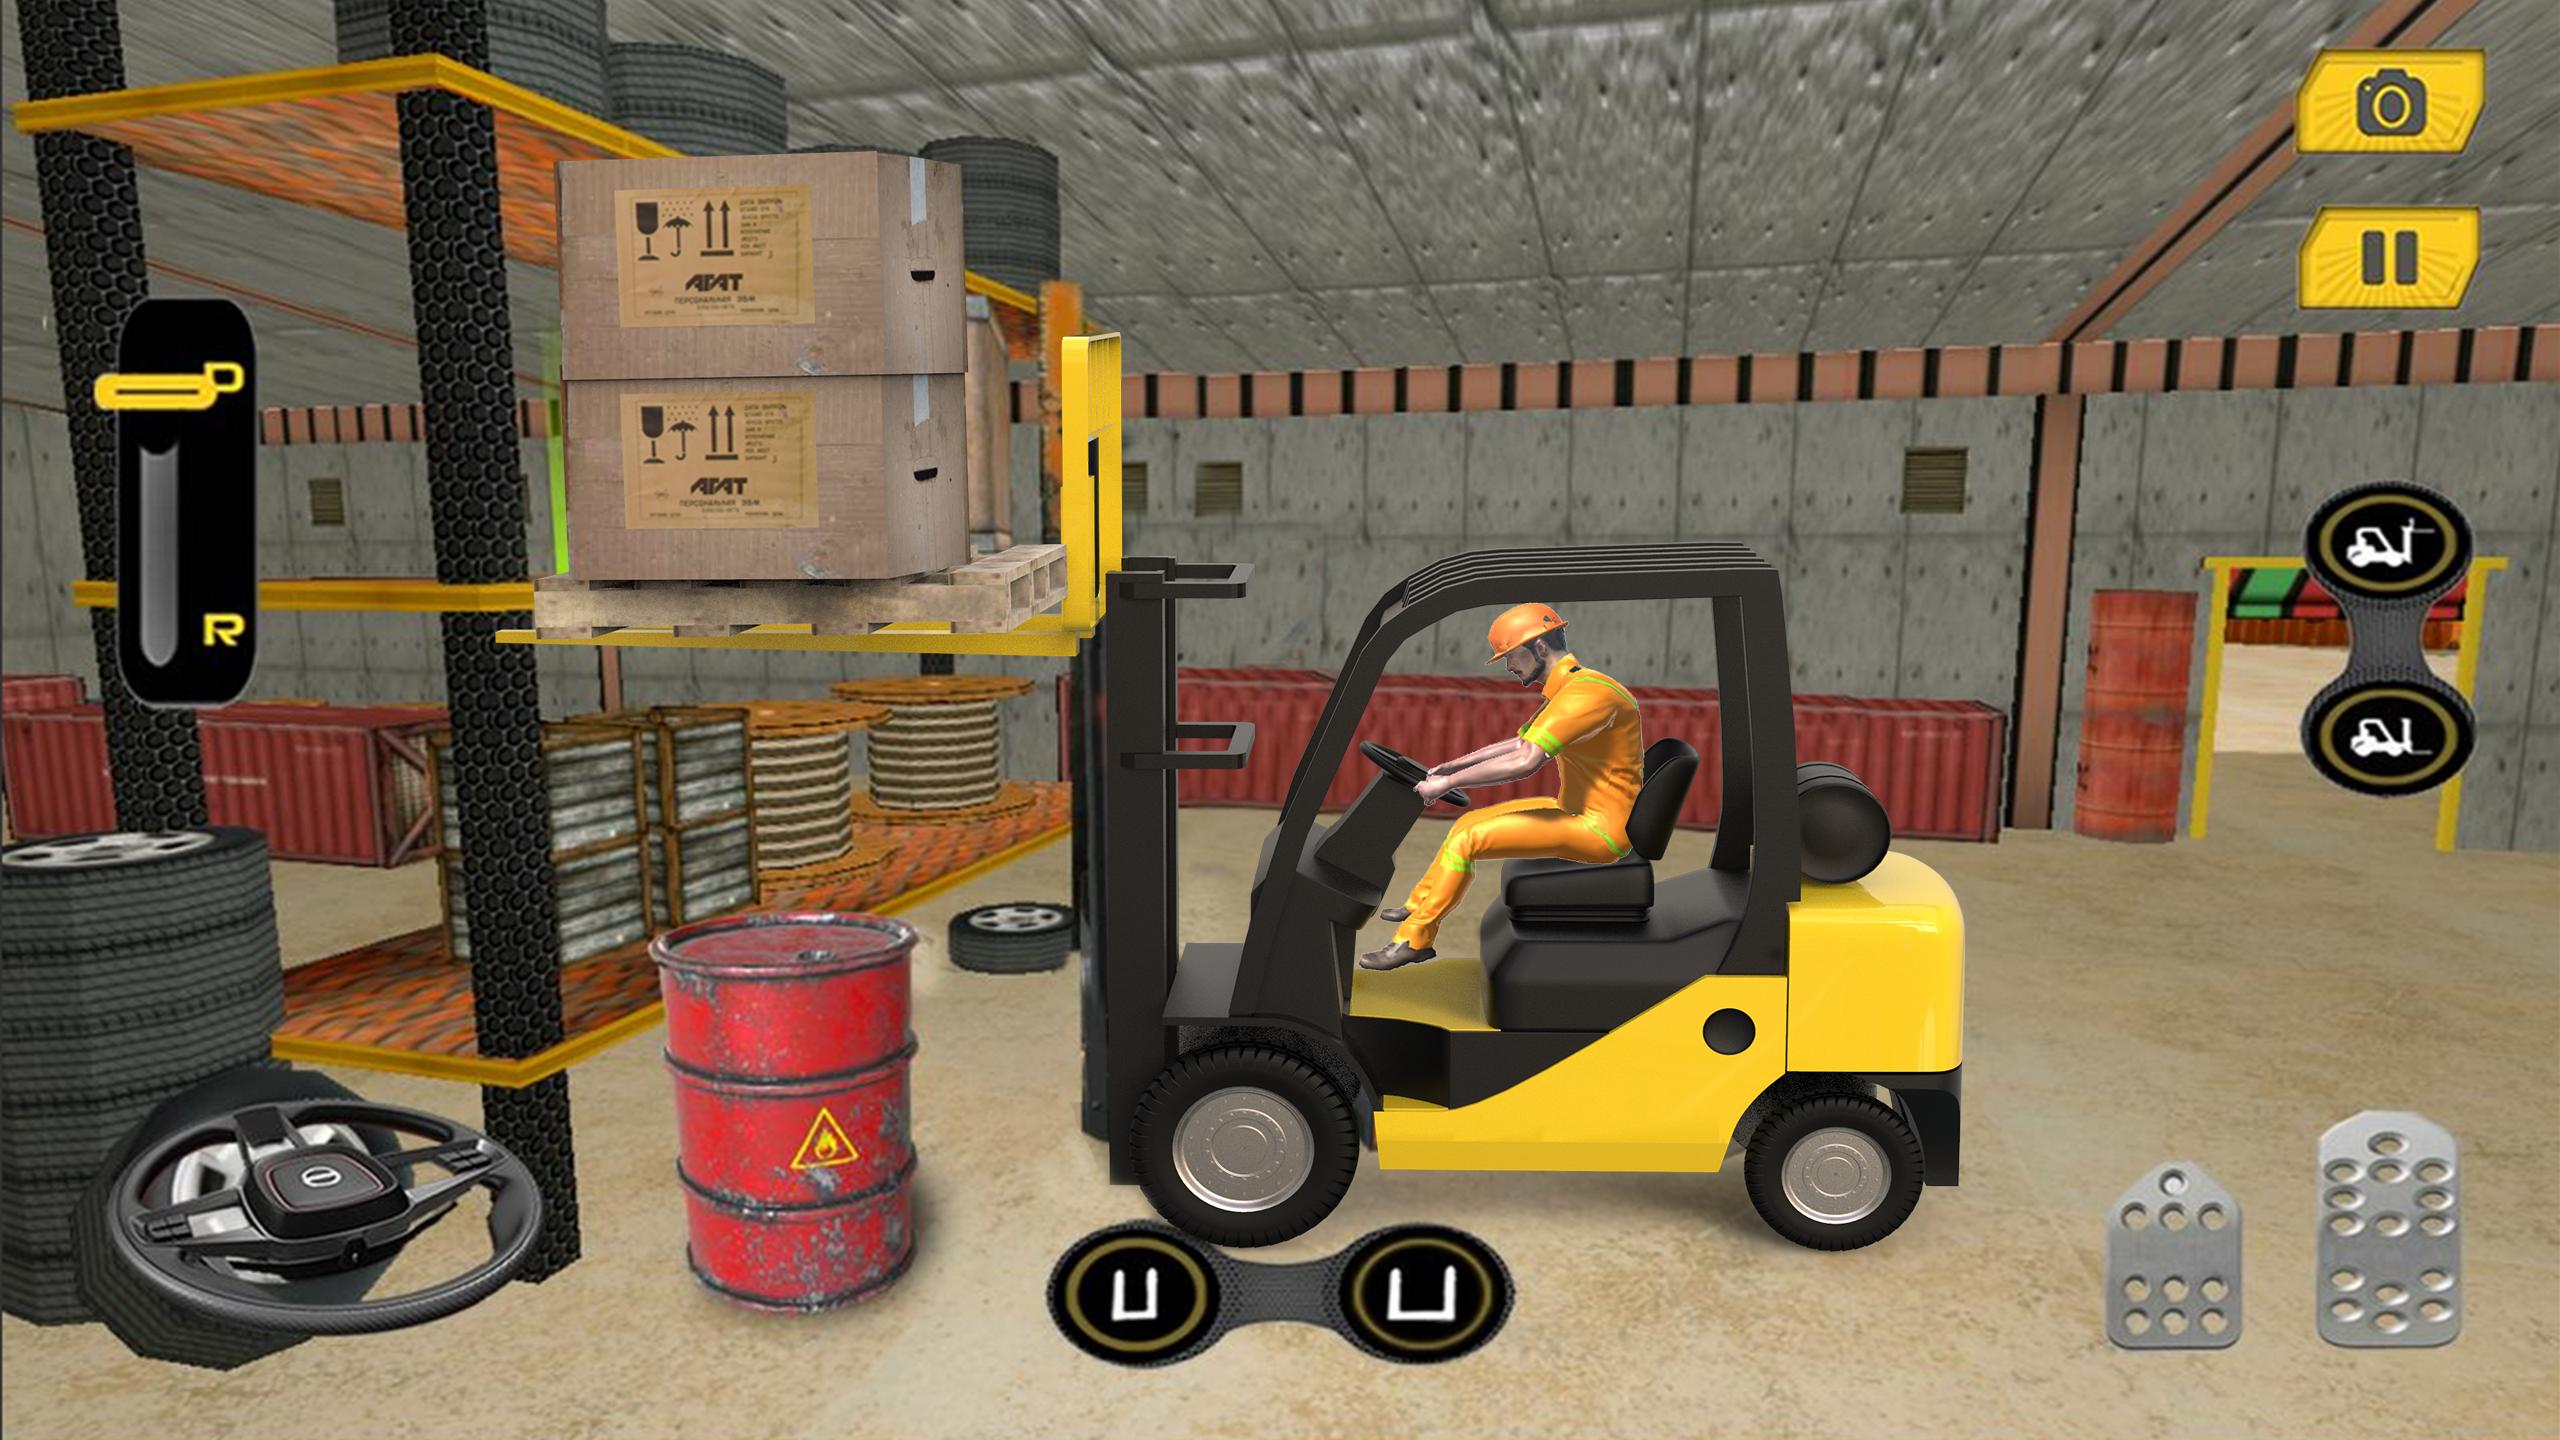 Real Forklift Simulator 2019: Cargo Forklift Games 3.1 Screenshot 15